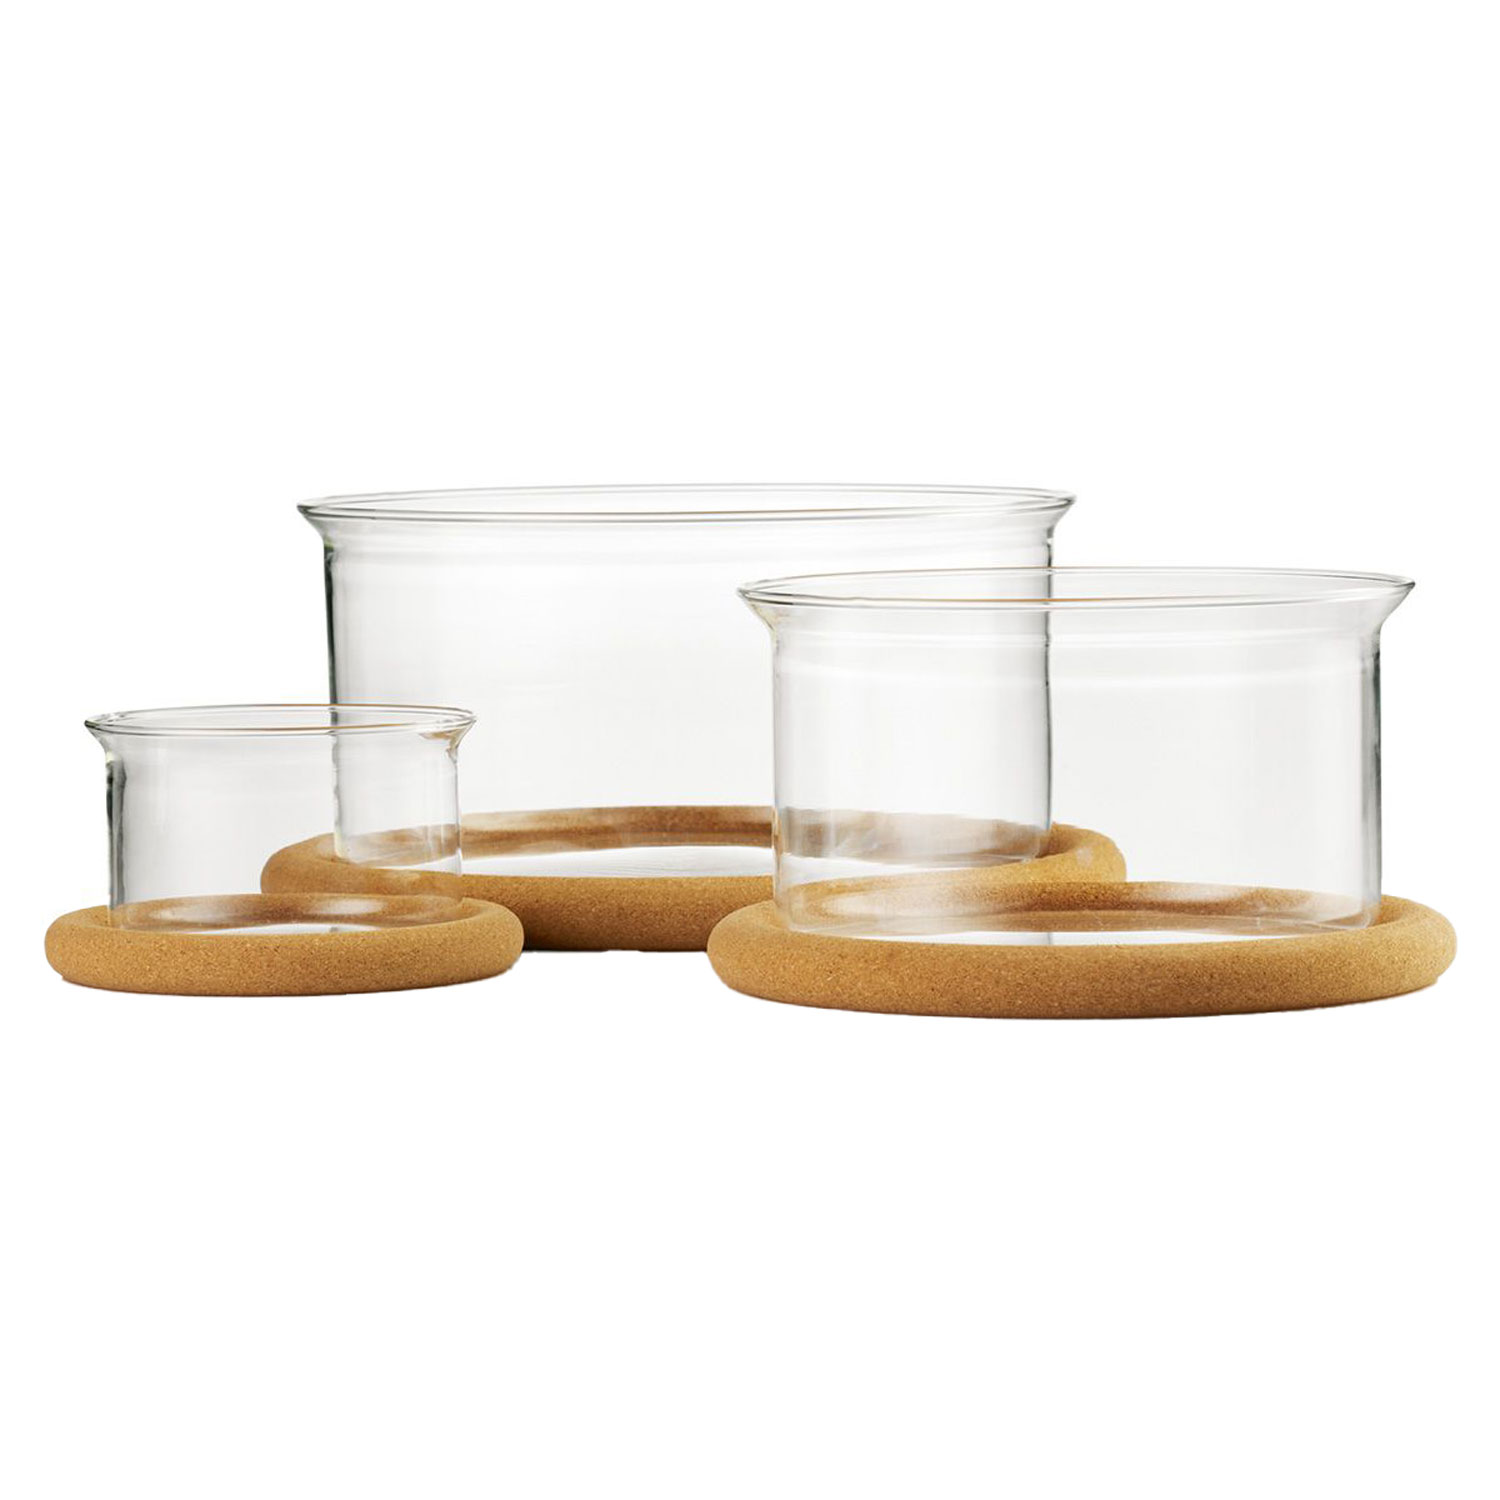 Bodum Hot Pot Set 2 Pcs Bowl with Lid, 1.0 L, 34 oz - 2.5 L, 85 oz Off White